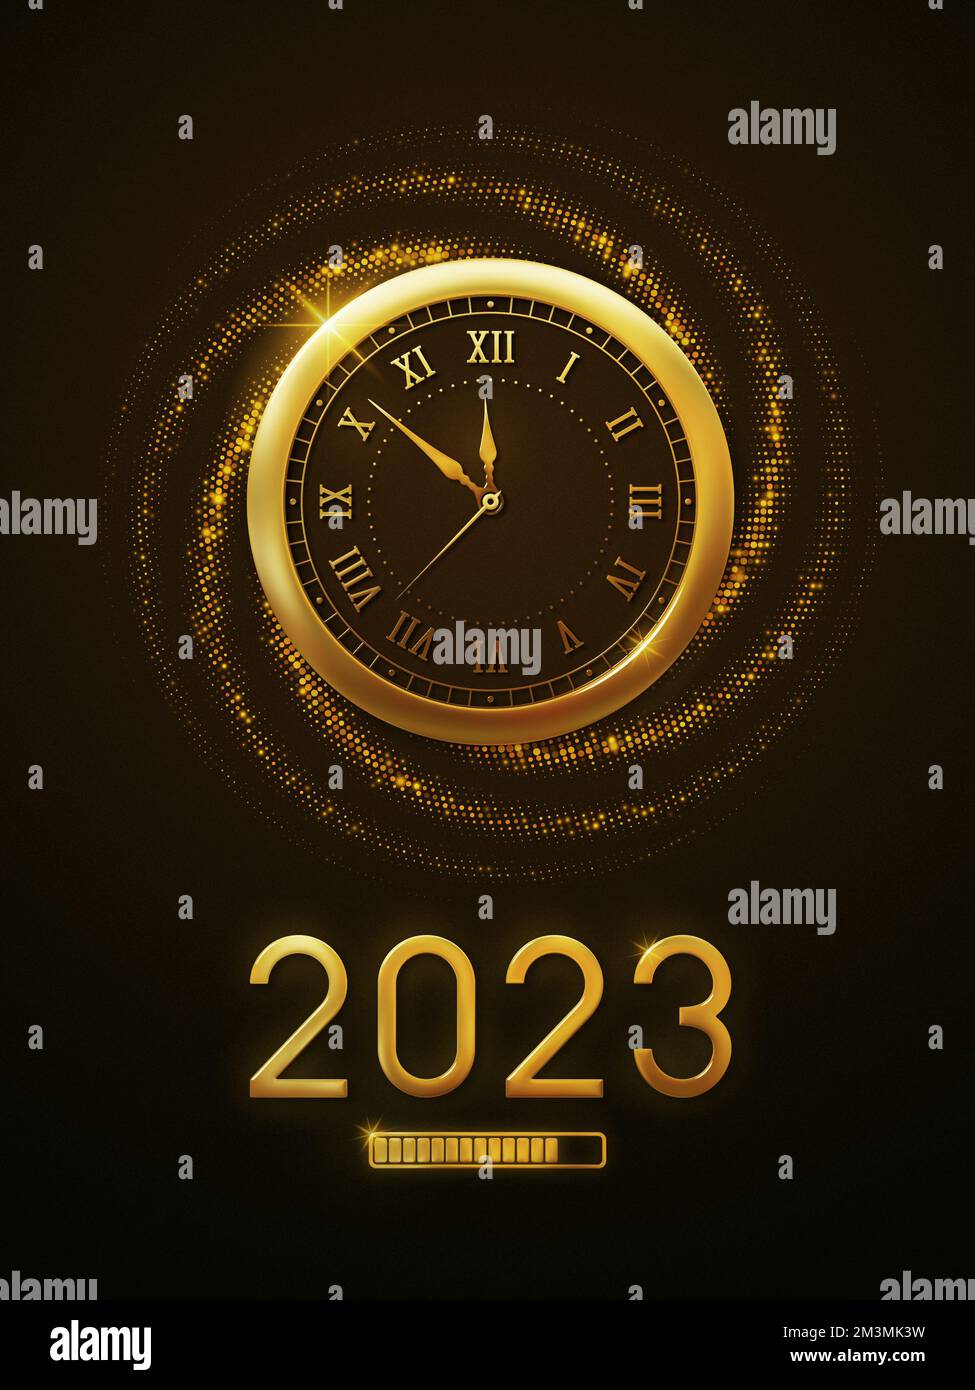 Año Nuevo 2023 Reloj de cuenta regresiva muestra el Año Nuevo 2023 cargando con un reloj de oro metálico y brillo. Feliz año nuevo 2023 Fondo de pantalla y fondo Foto de stock